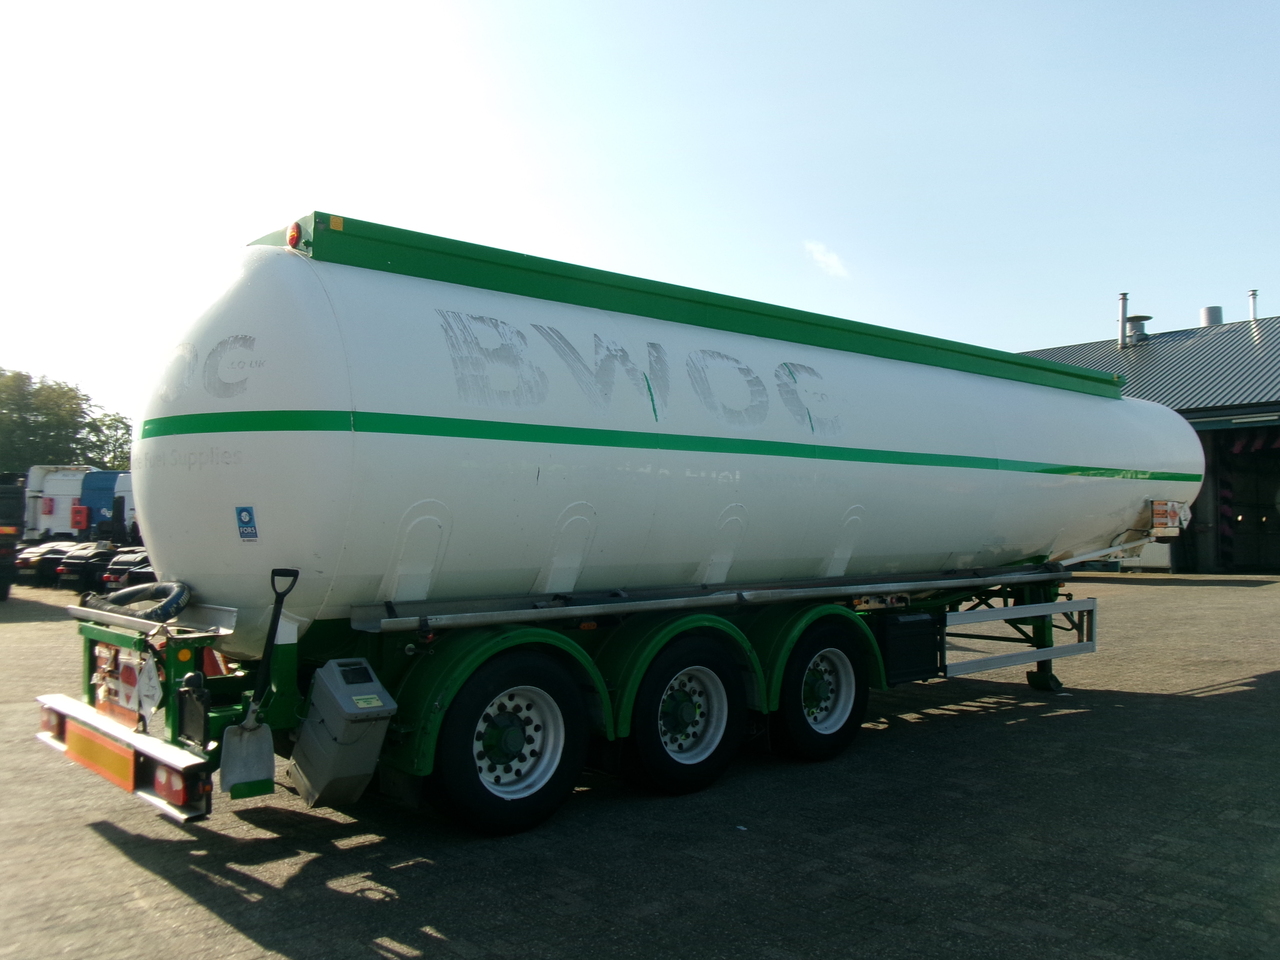 Полуприцеп-цистерна для транспортировки топлива Feldbinder Fuel tank alu 42 m3 / / 6 comp + pump: фото 4